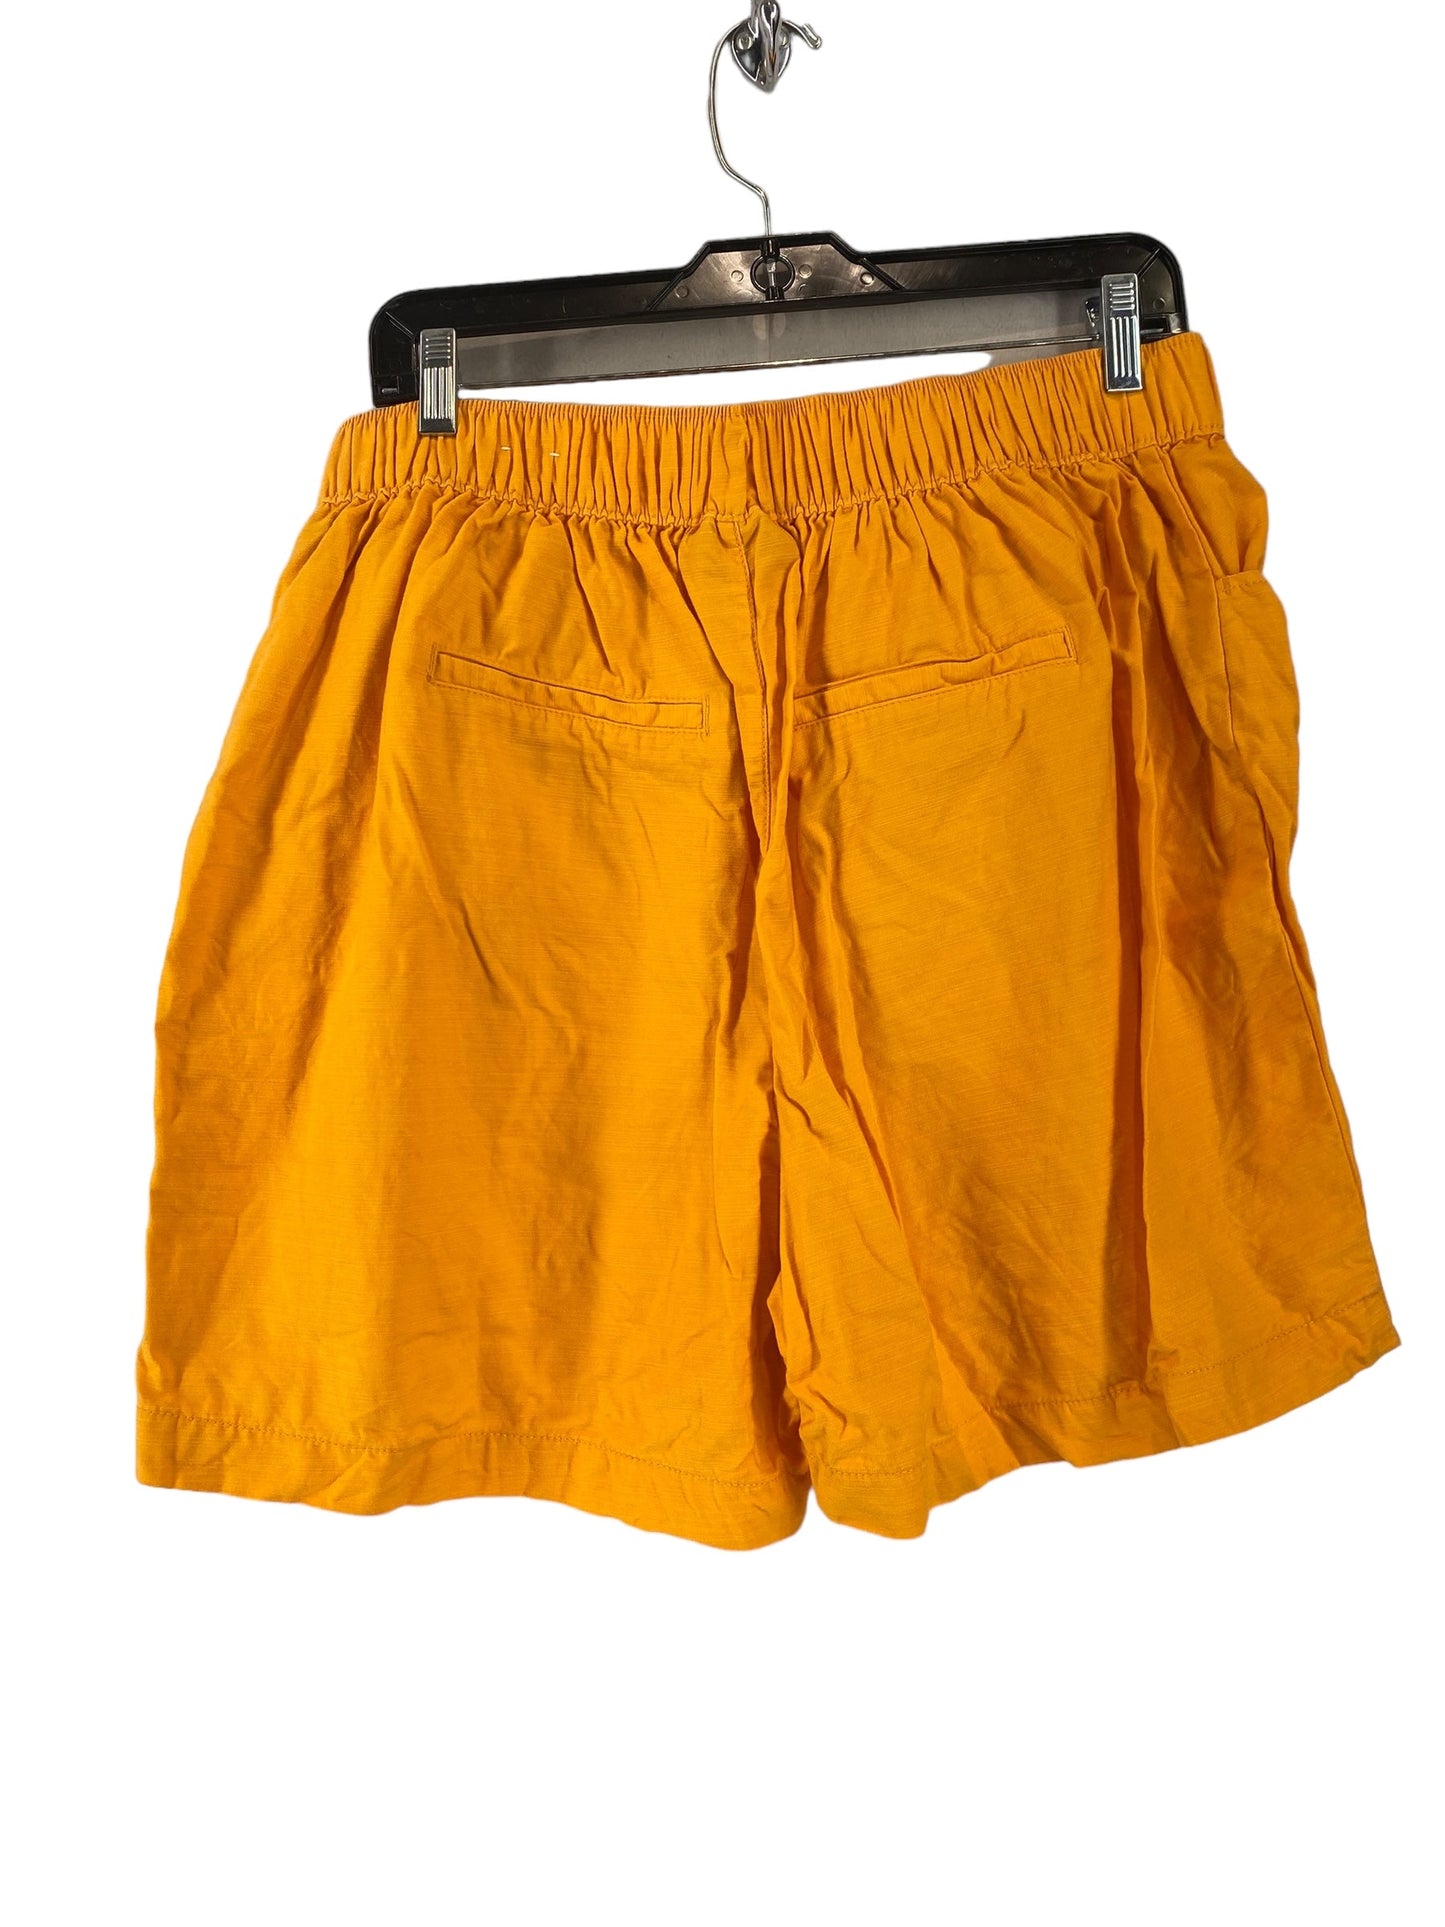 Orange Shorts Lane Bryant, Size 10